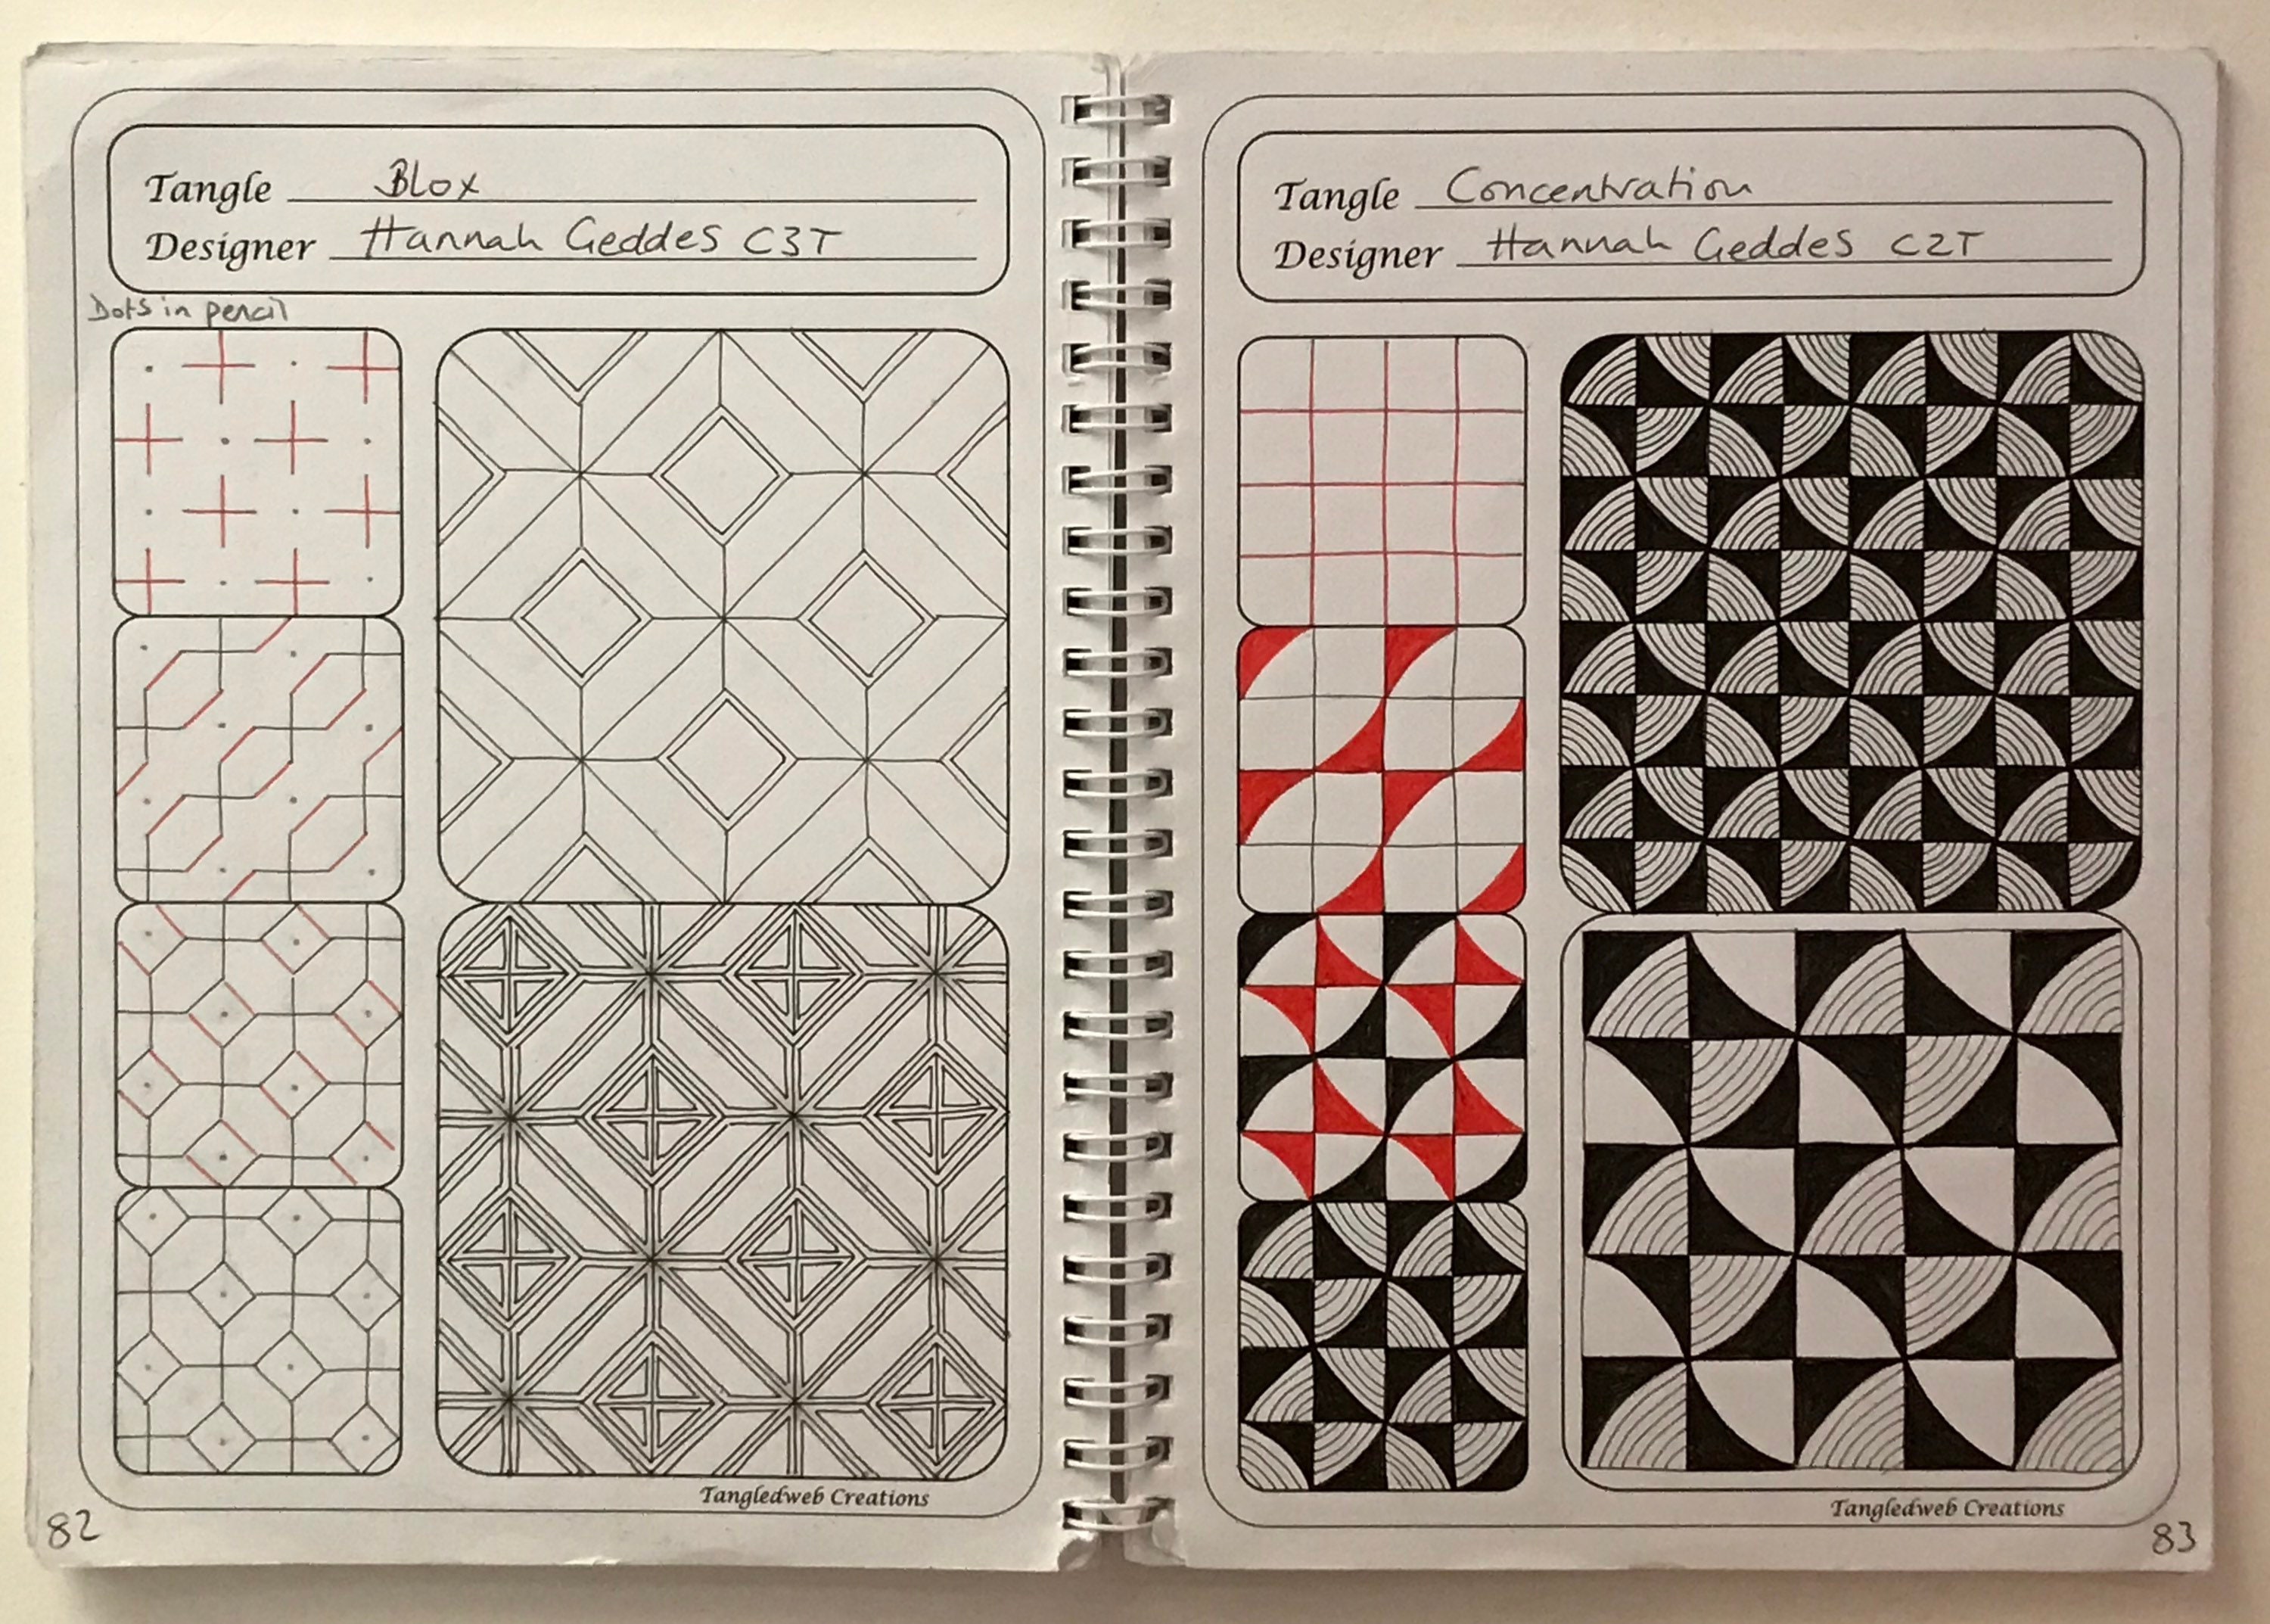 Zentangle Paper Tile and Pen Set - Square Renaissance - 12 - Retail / Single